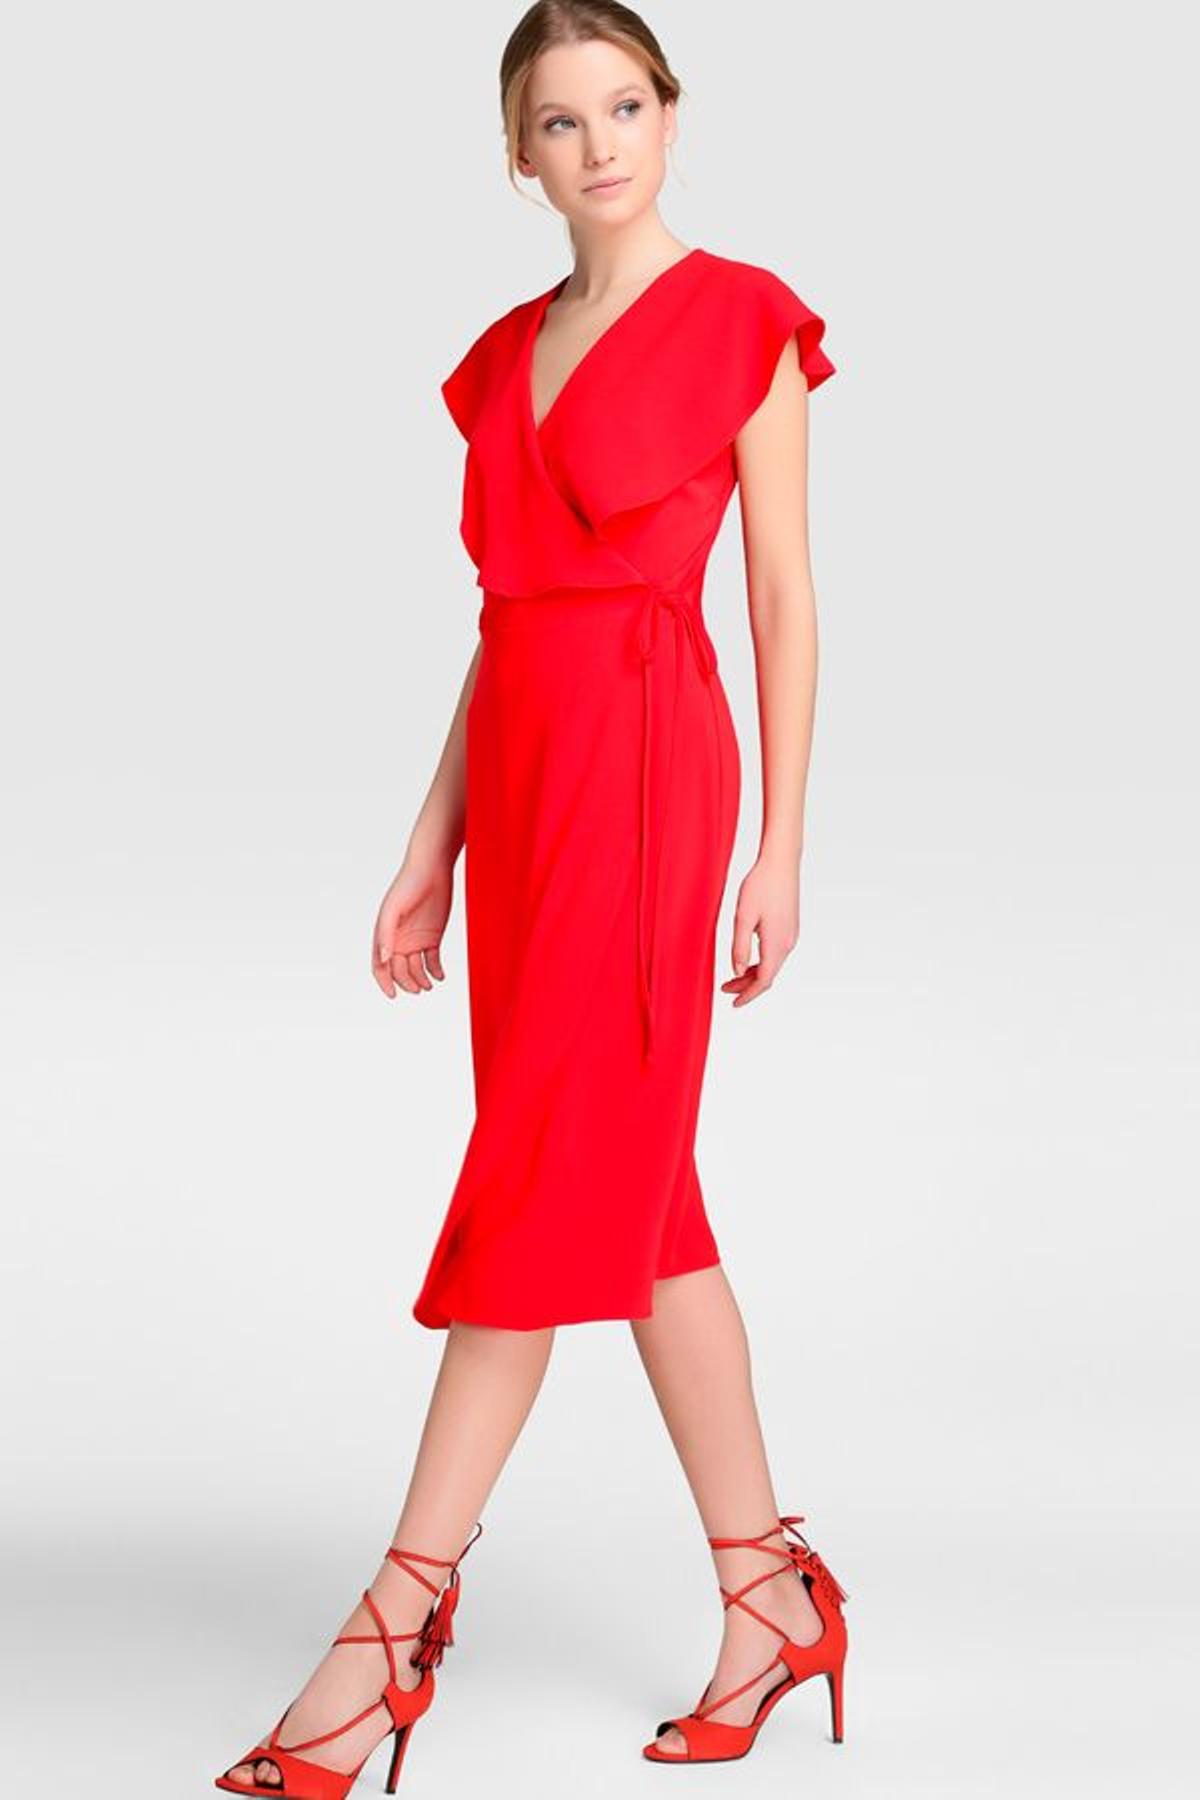 Vestidos de invitada por menos de 50 euros: rojo de Easy Wear